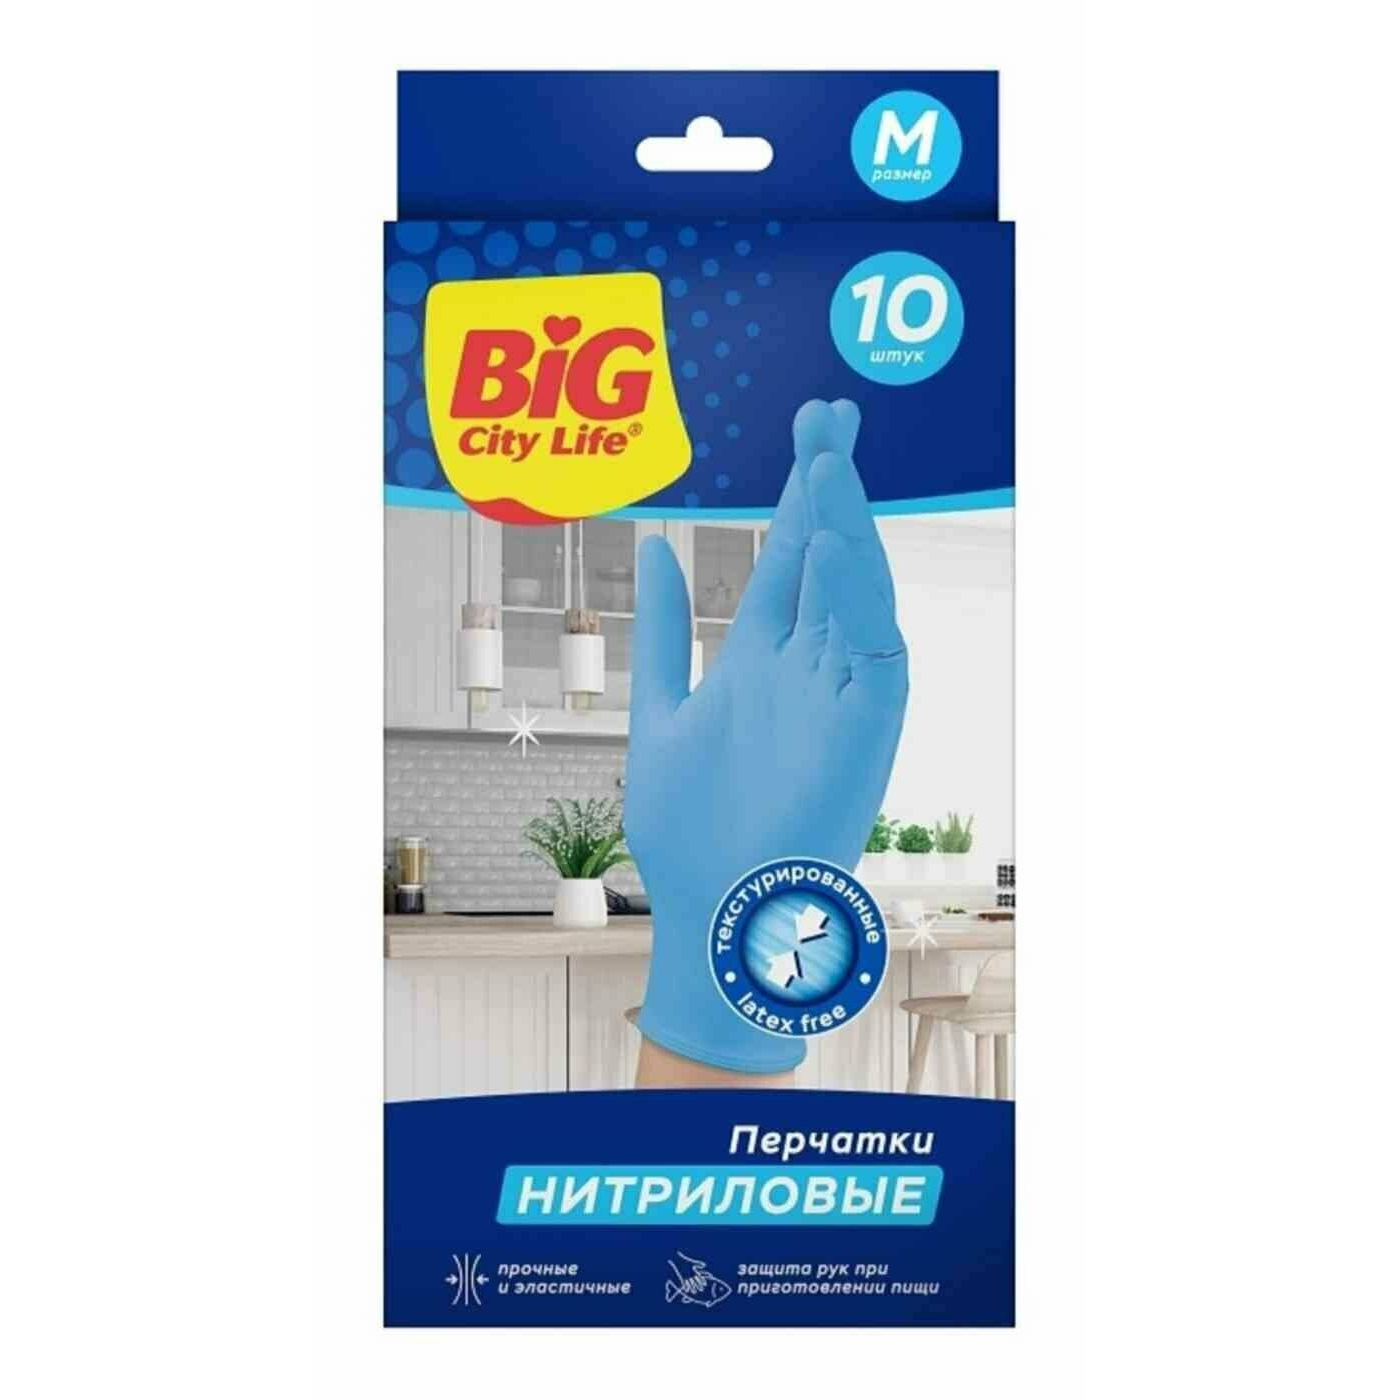 Перчатки Big City Life нитриловые синие M 10 шт перчатки хозяйственные lomberta экстра прочные m